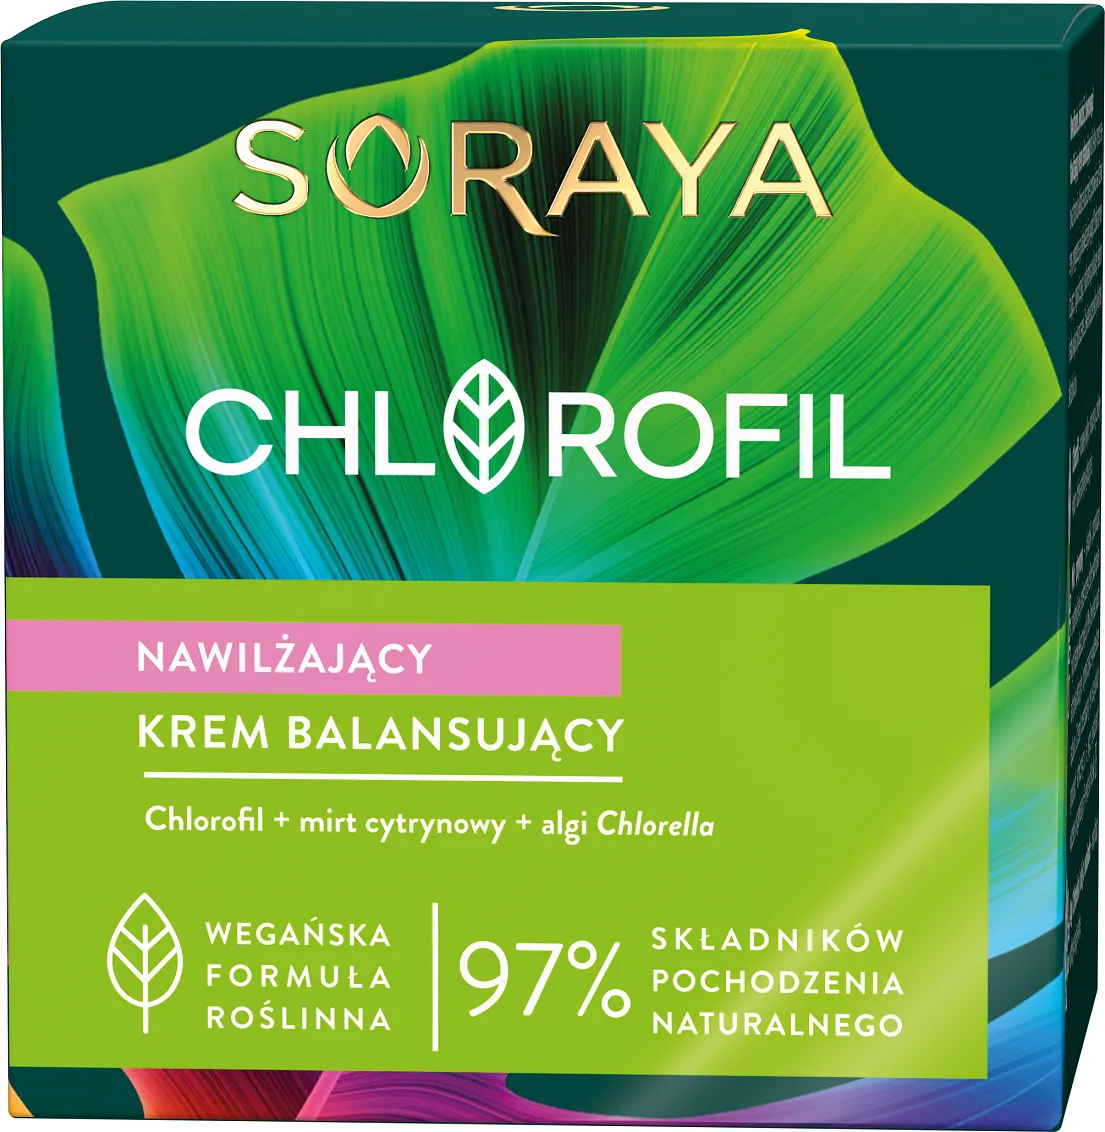 Soraya Chlorofil nawilżający krem balansujący, 50 ml